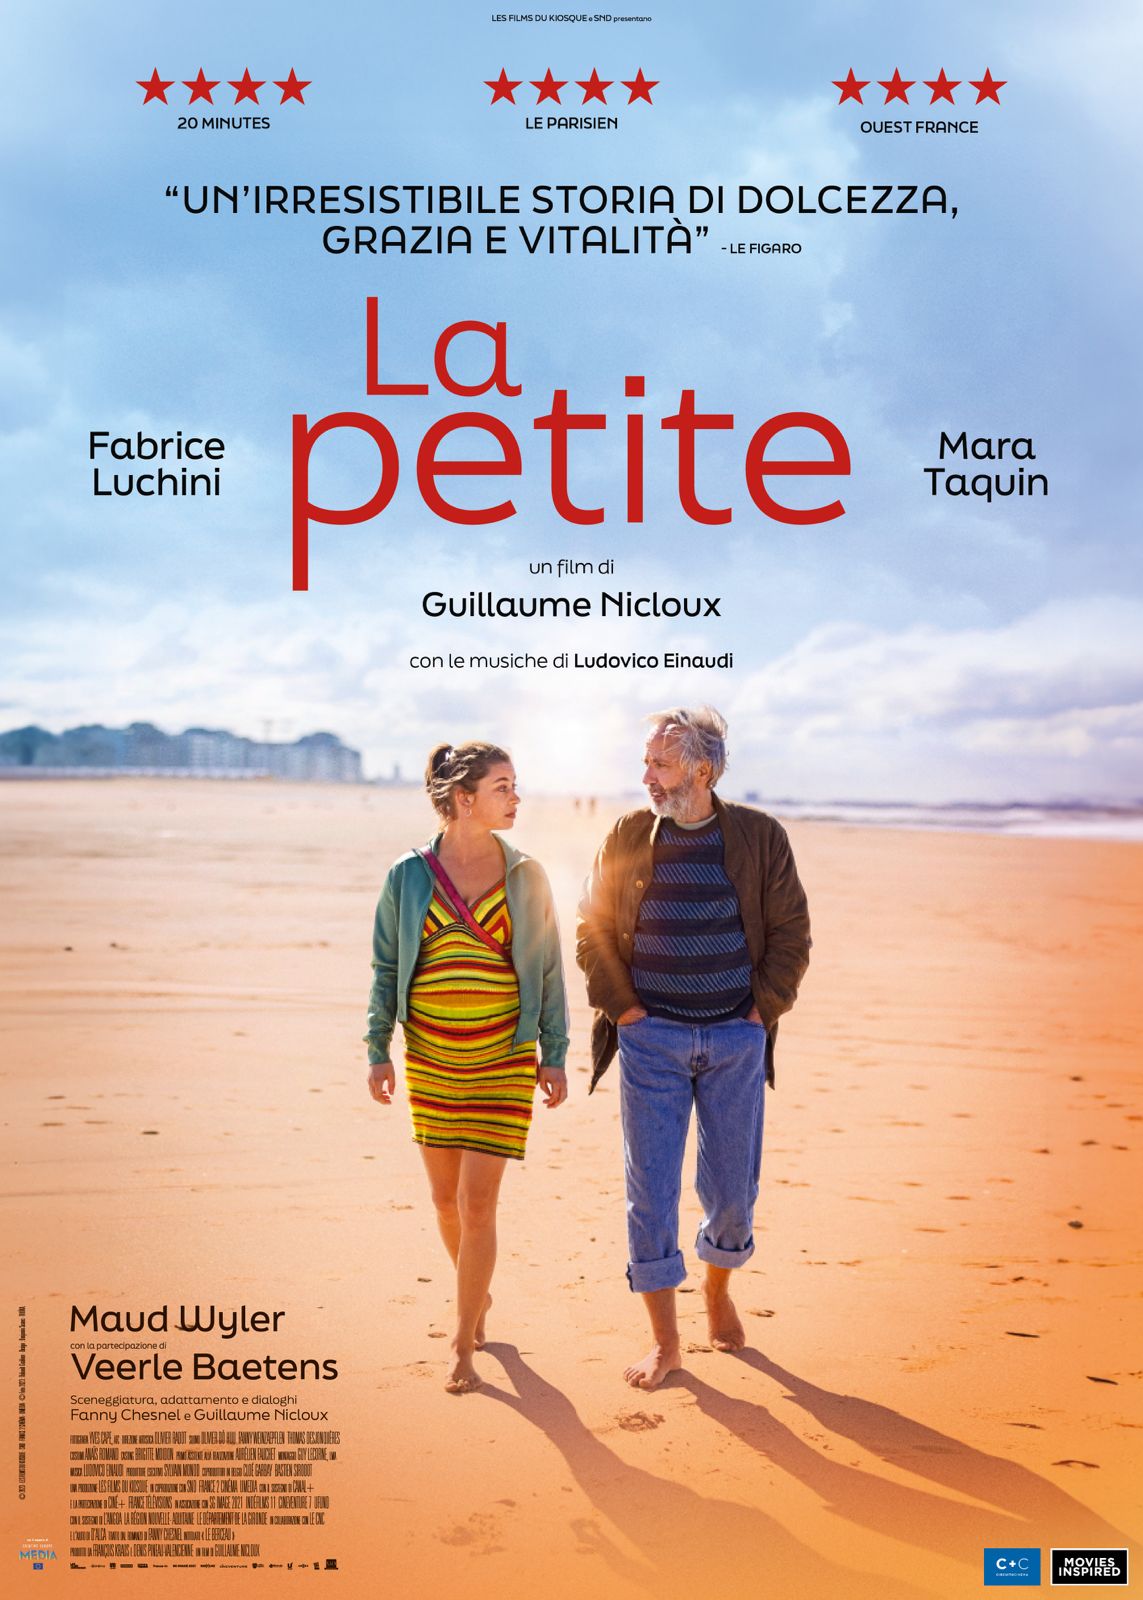 La Petite con Fabrice Luchini e Mara Taquin - Poster 